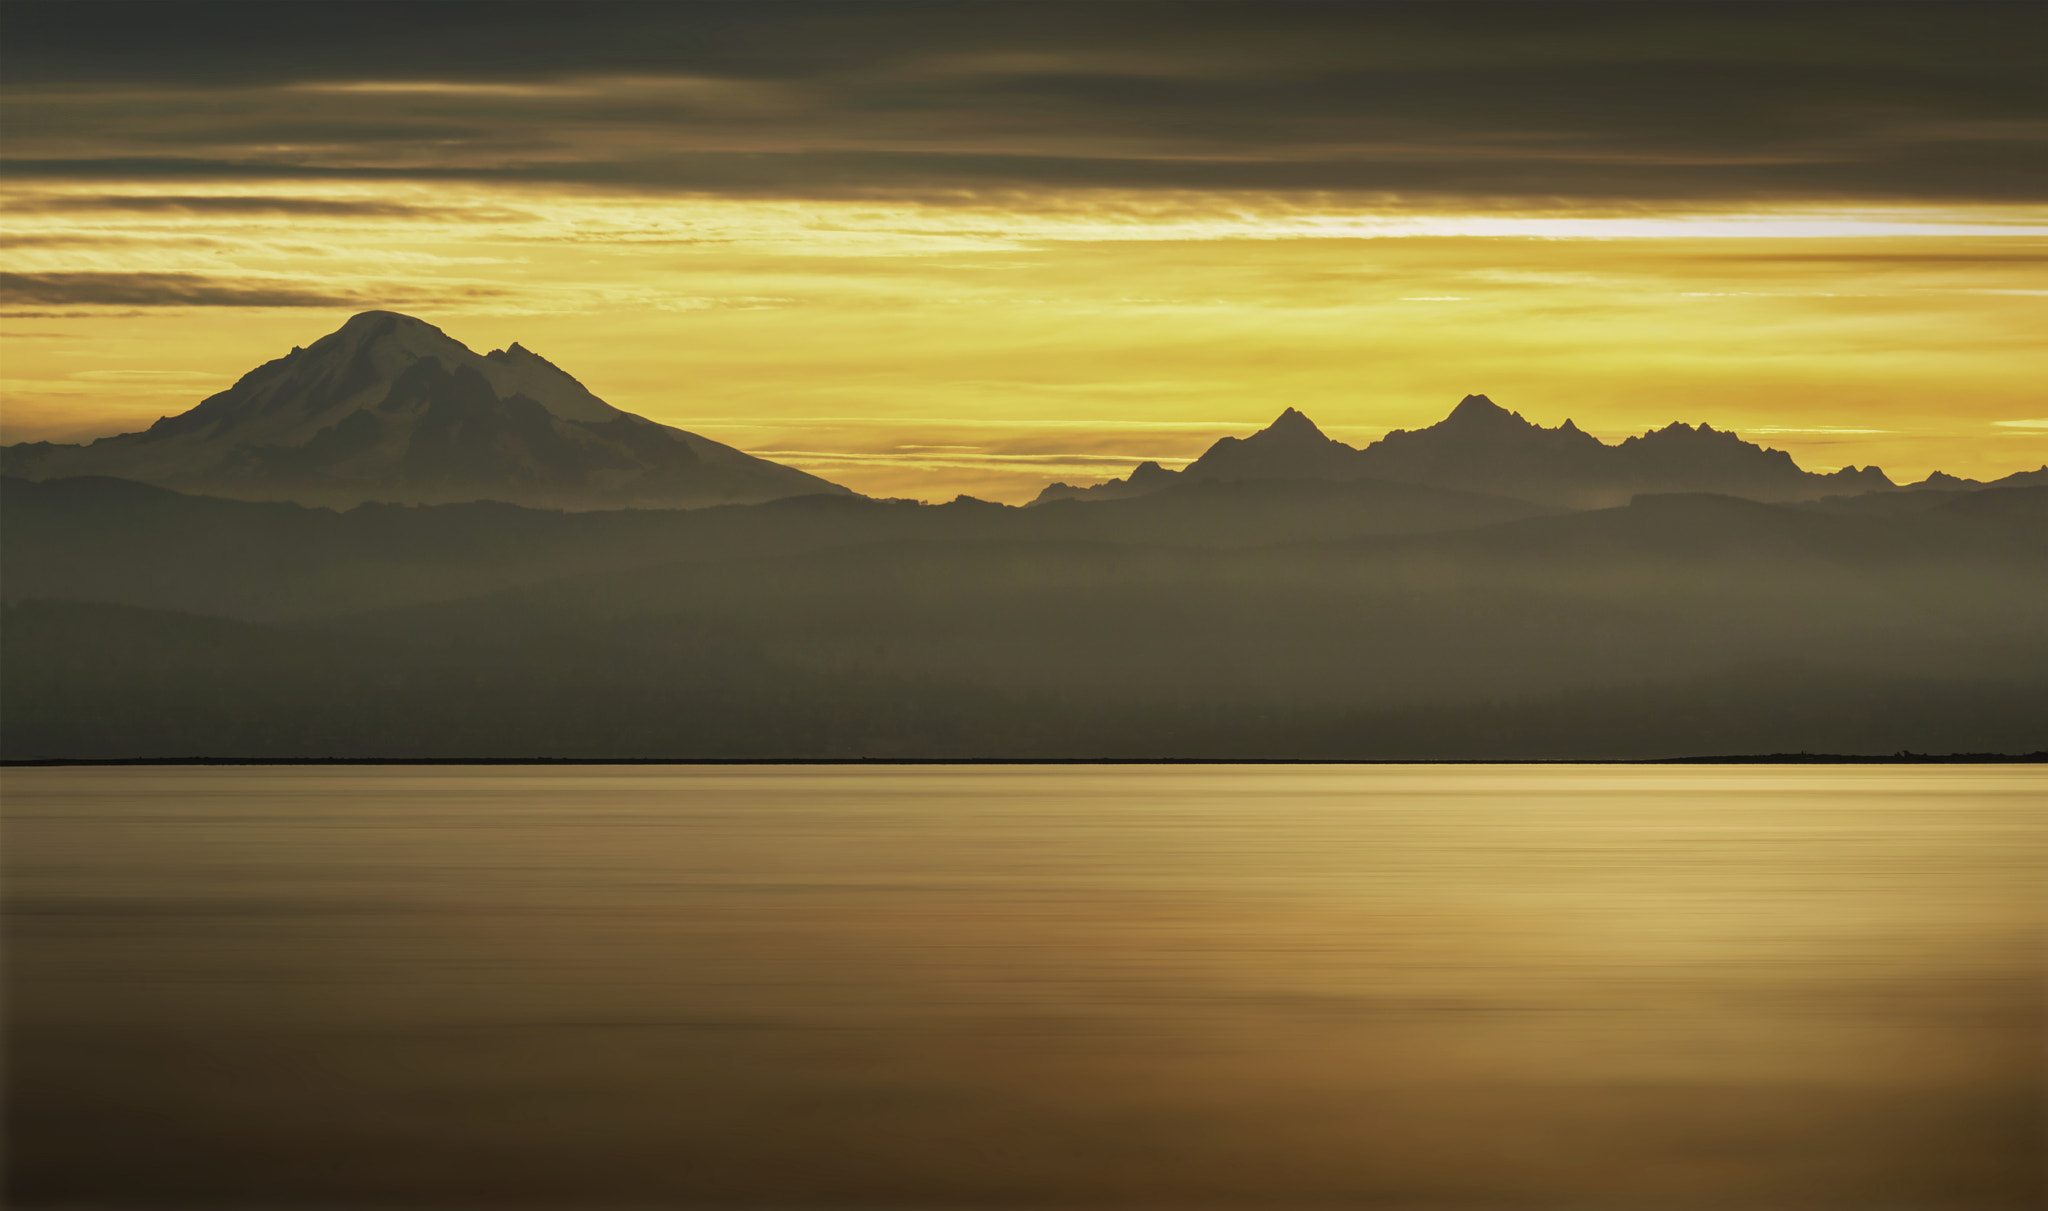 AF-S Zoom-Nikkor 80-200mm f/2.8D IF-ED sample photo. Cascade sunrise photography